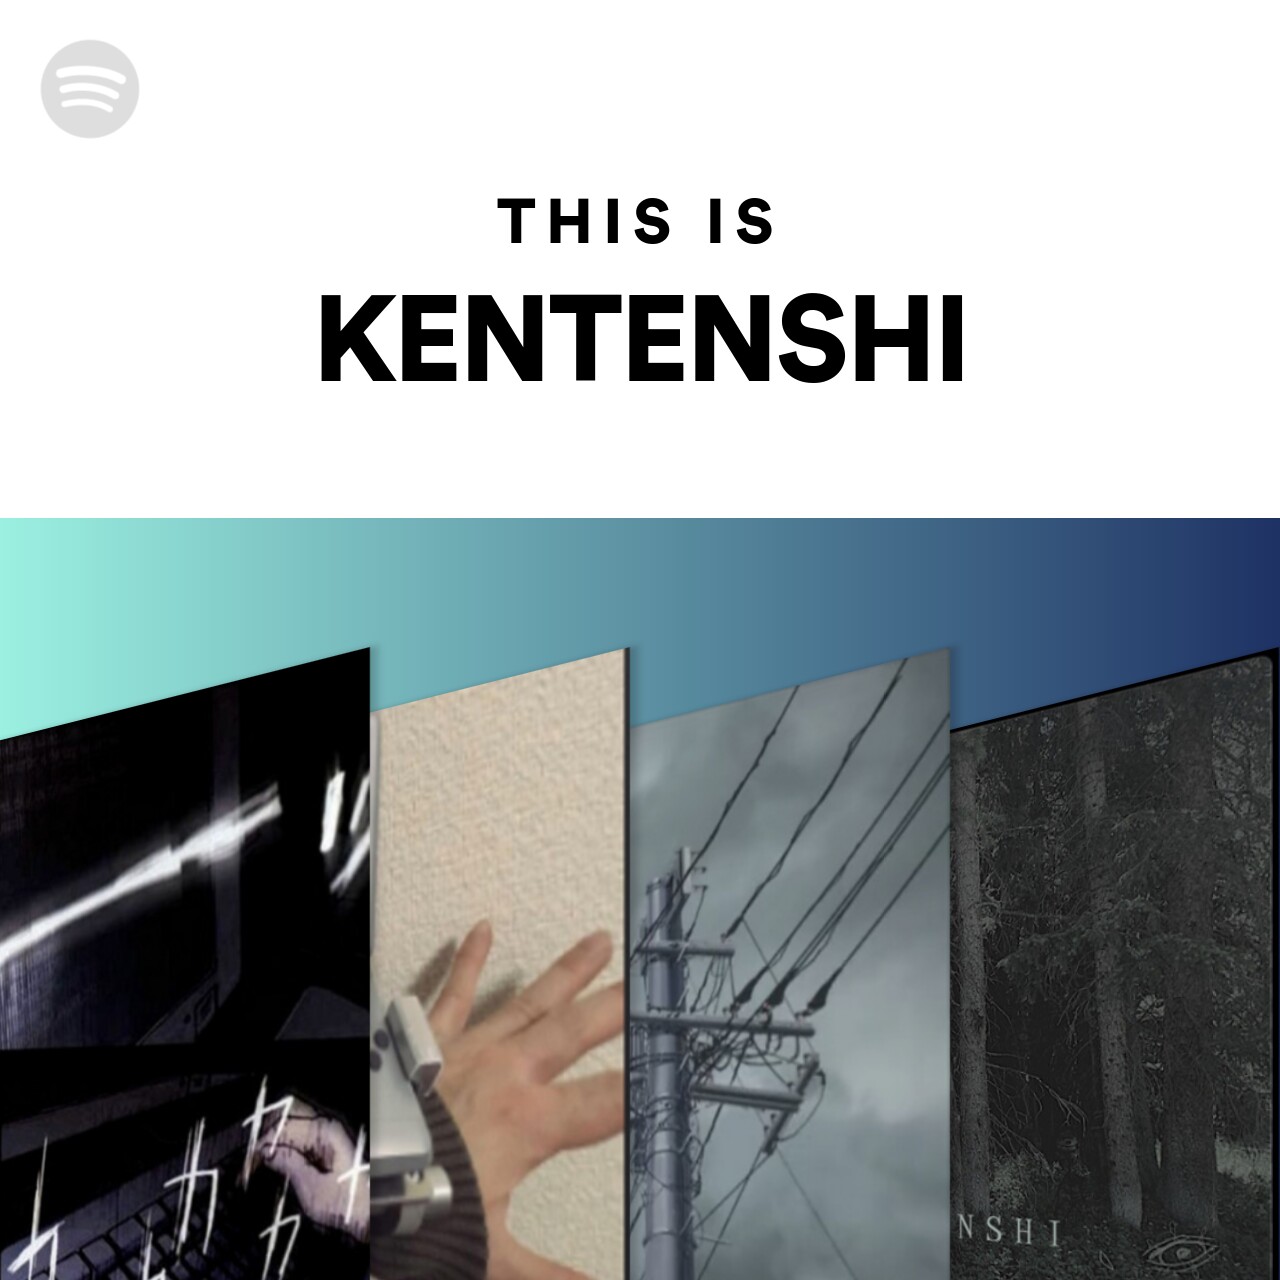 This is KENTENSHI